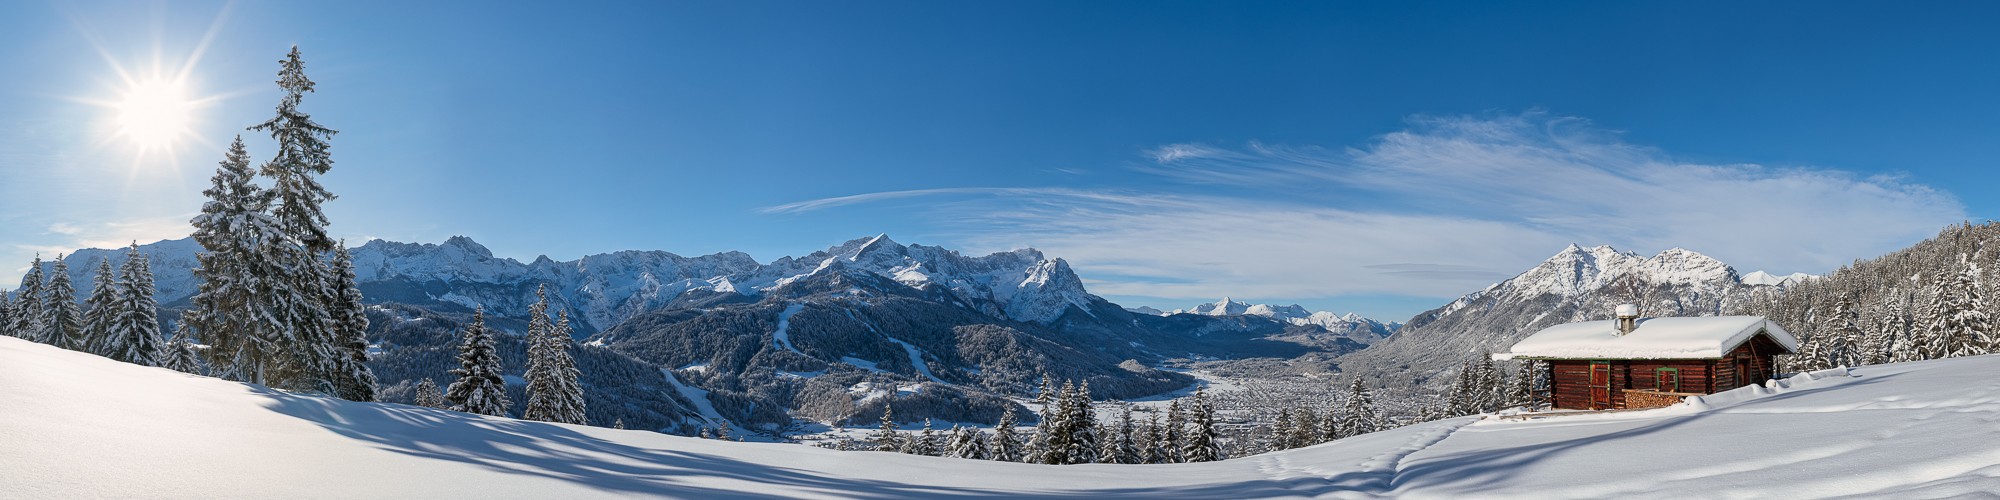 Winterlandschaft in Garmisch-Partenkirchen